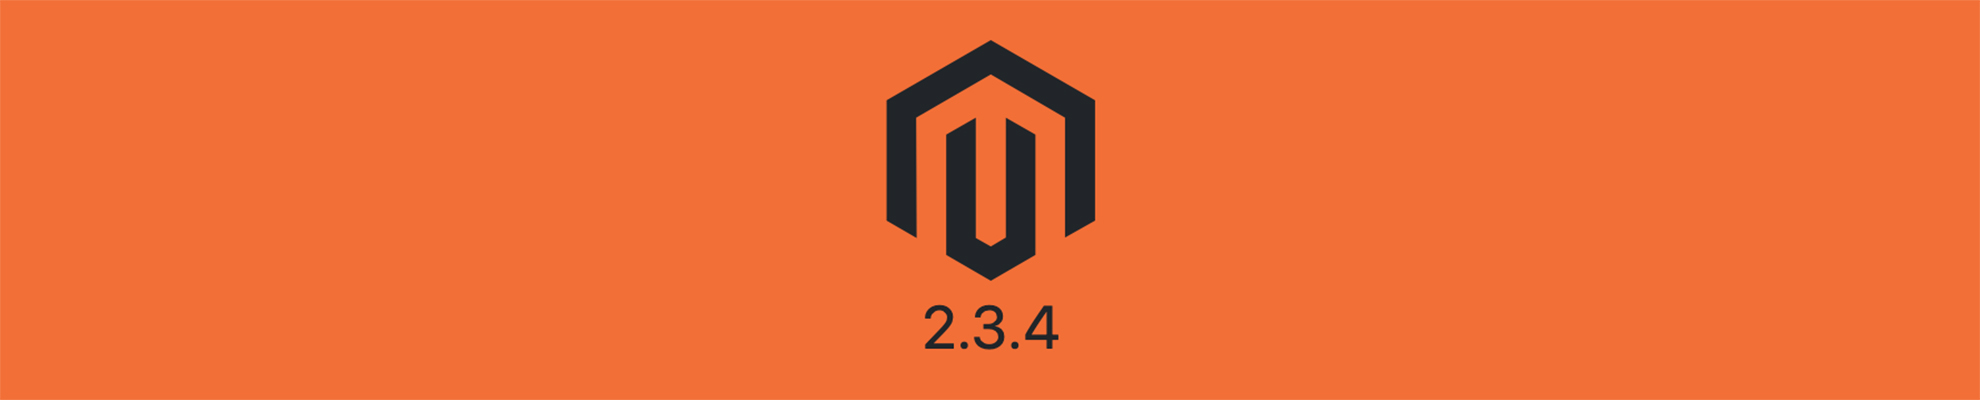 Magento 2.3.4 – novità della release